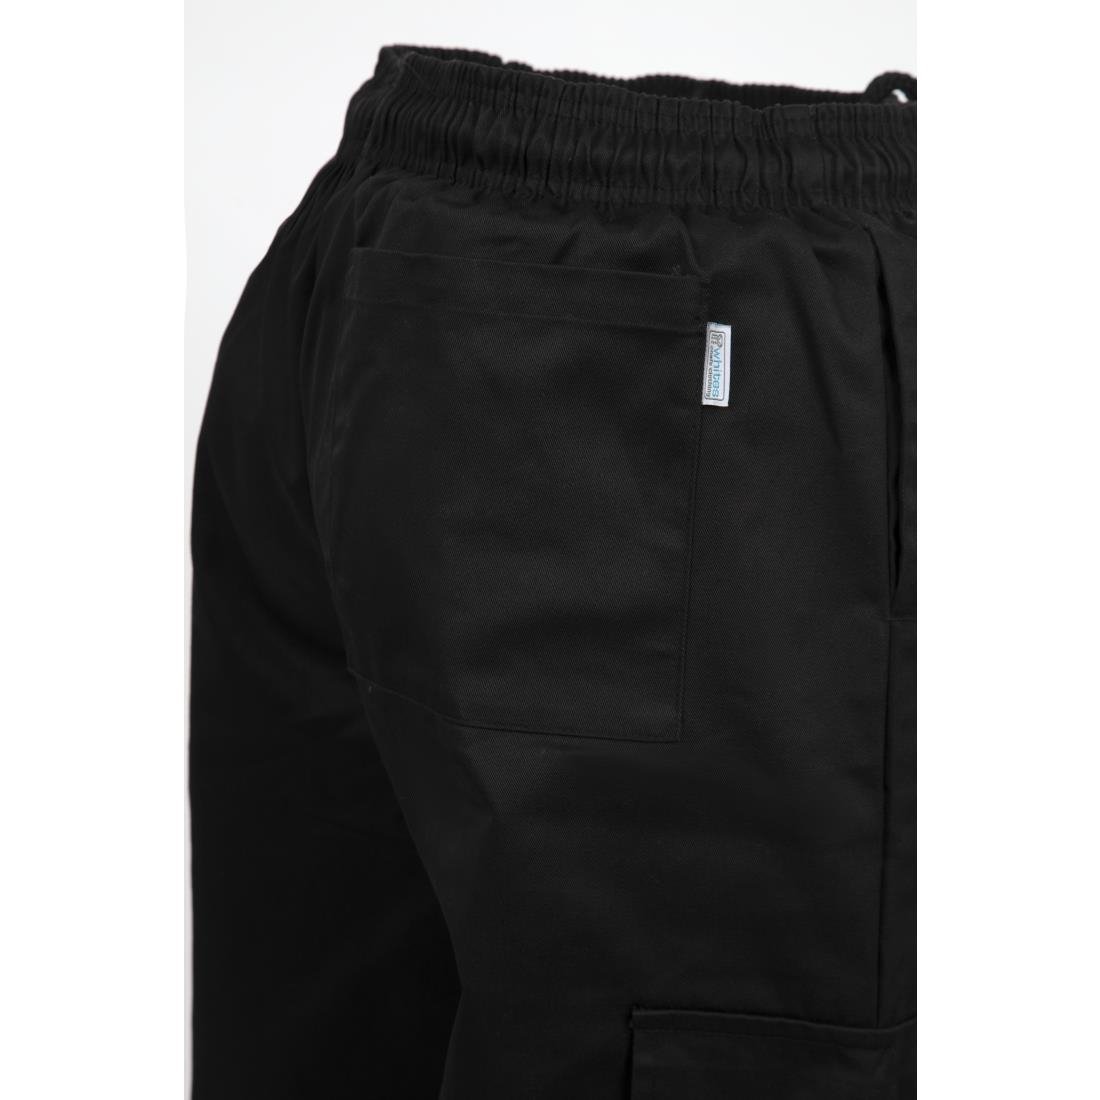 Pantalon cargo Whites noir M